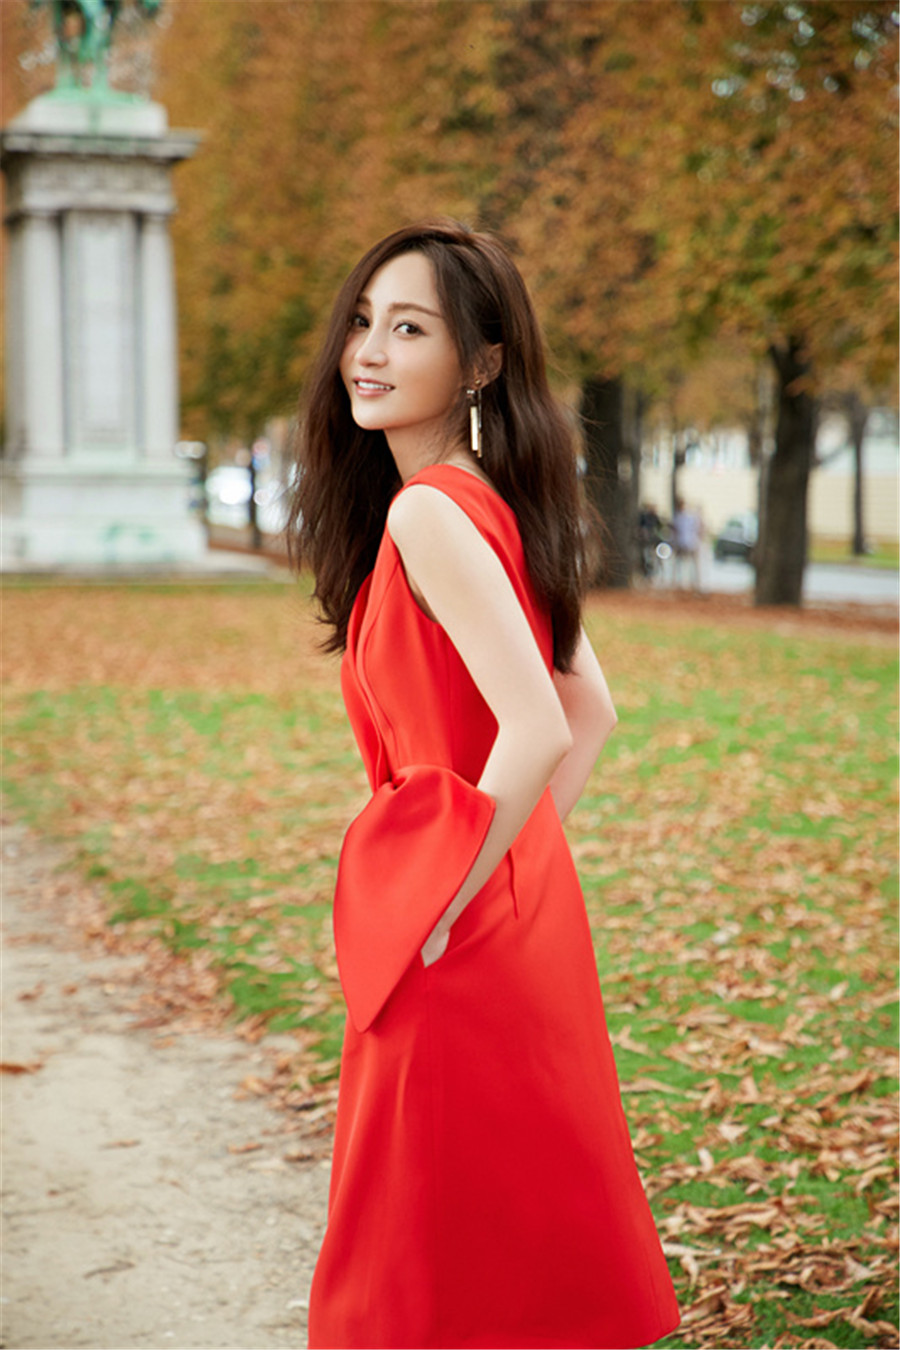 姚笛红裙漫步巴黎街头显高贵 笑容明媚优雅动人